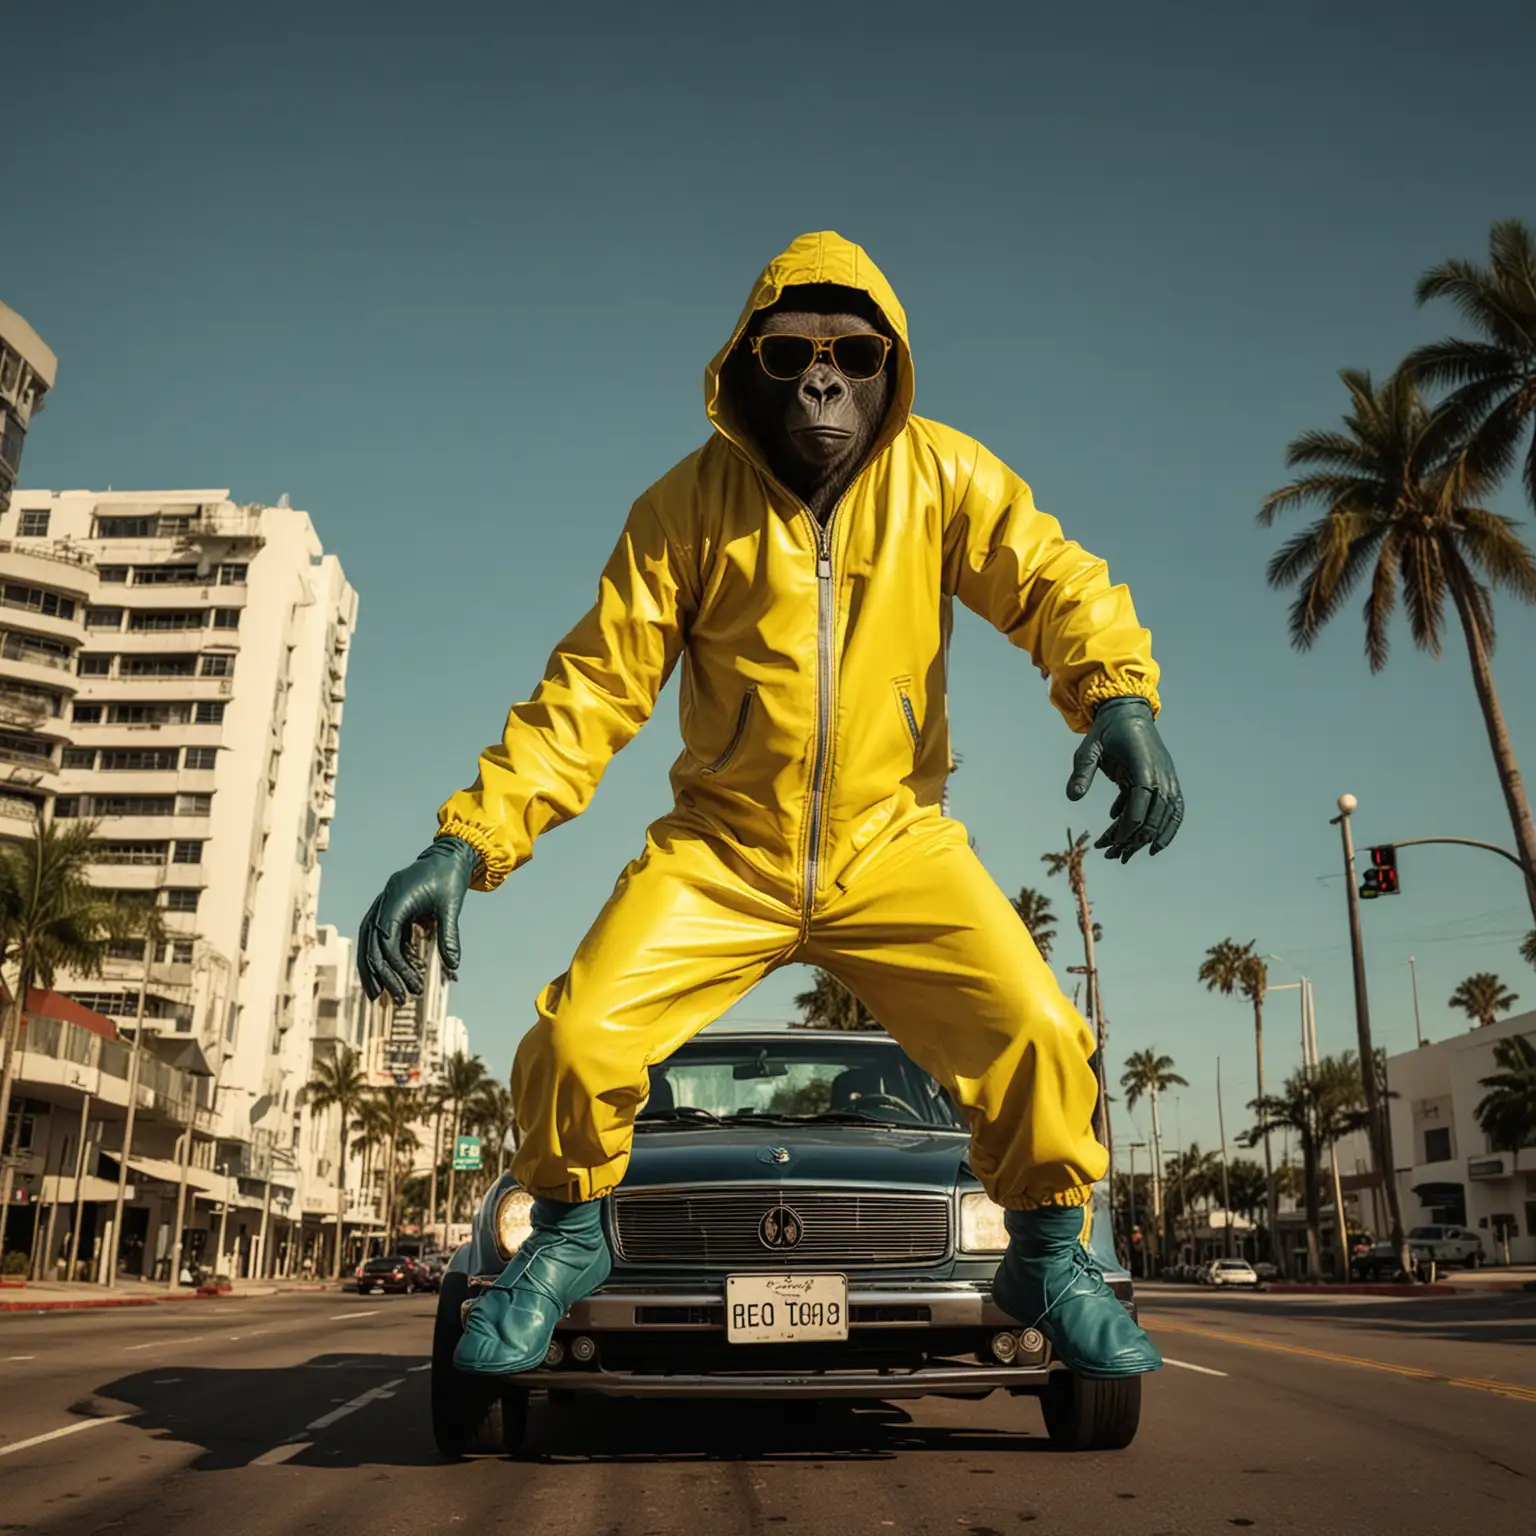 Miami Sunset Gorilla Breaking Bad Jumpsuit Stunt on Car